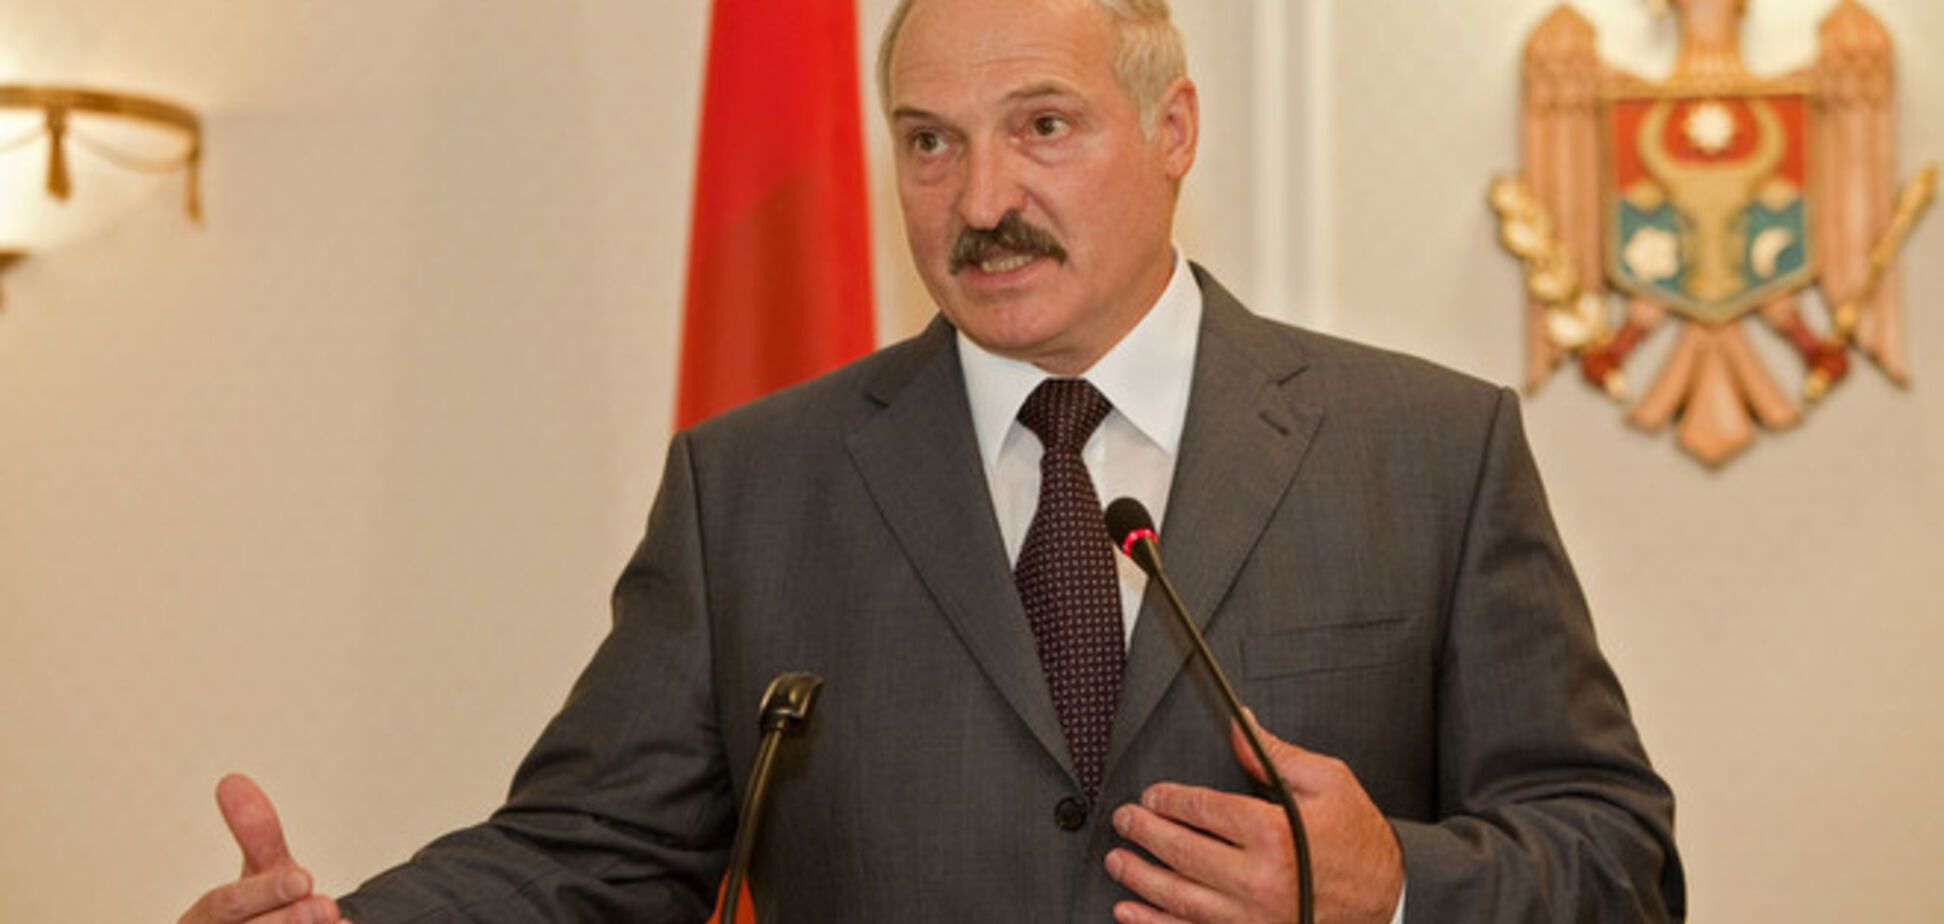 Беларусь потеряла около миллиарда долларов из-за обвала рубля - Лукашенко